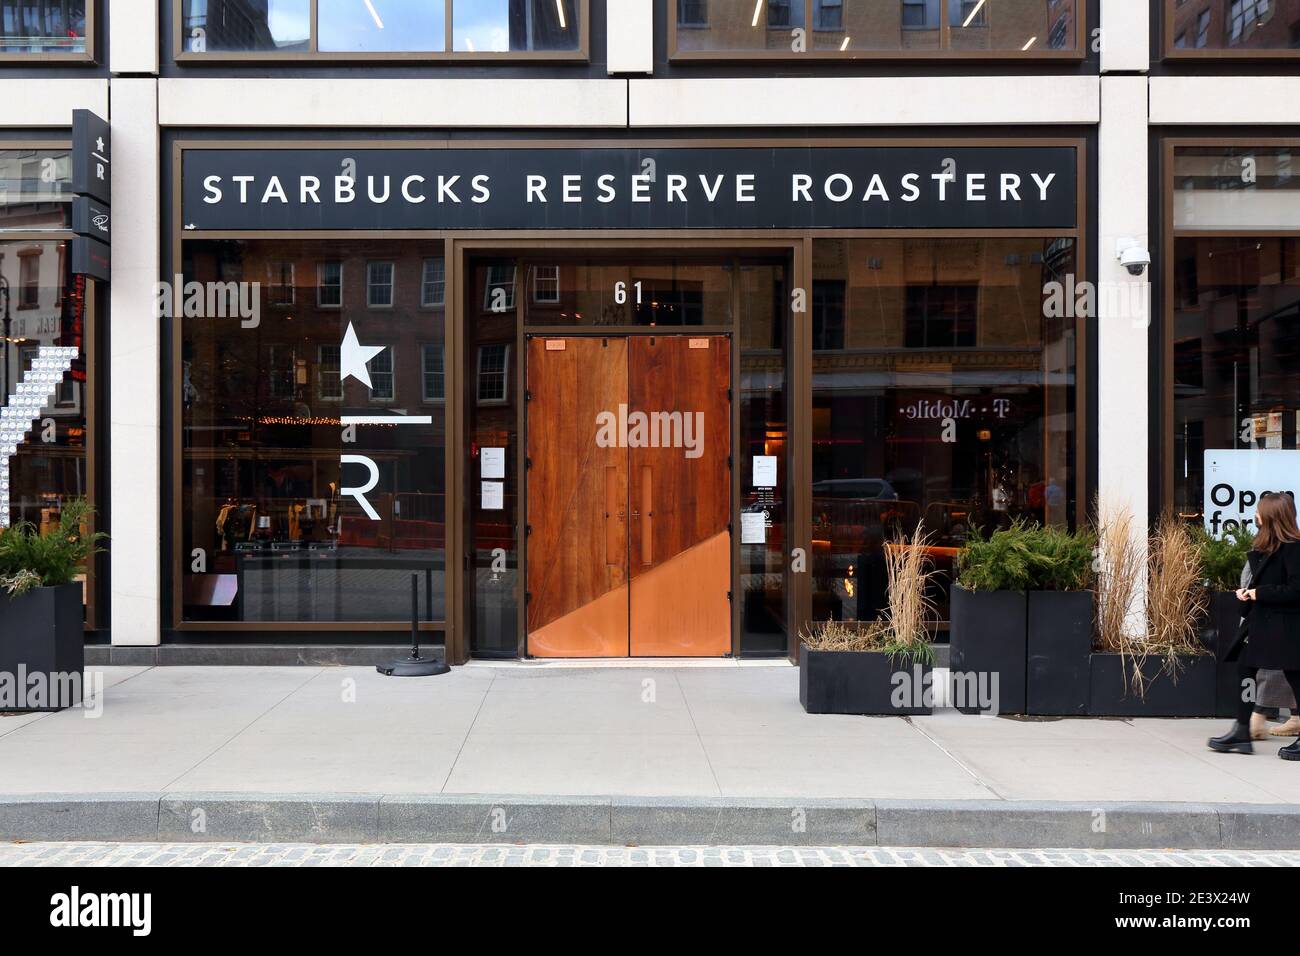 Starbucks Reserve Roastery, 61 Ninth Ave, New York, NYC Foto von einer Café-Bar und einem Restaurant in Manhattans Chelsea-Viertel. Stockfoto